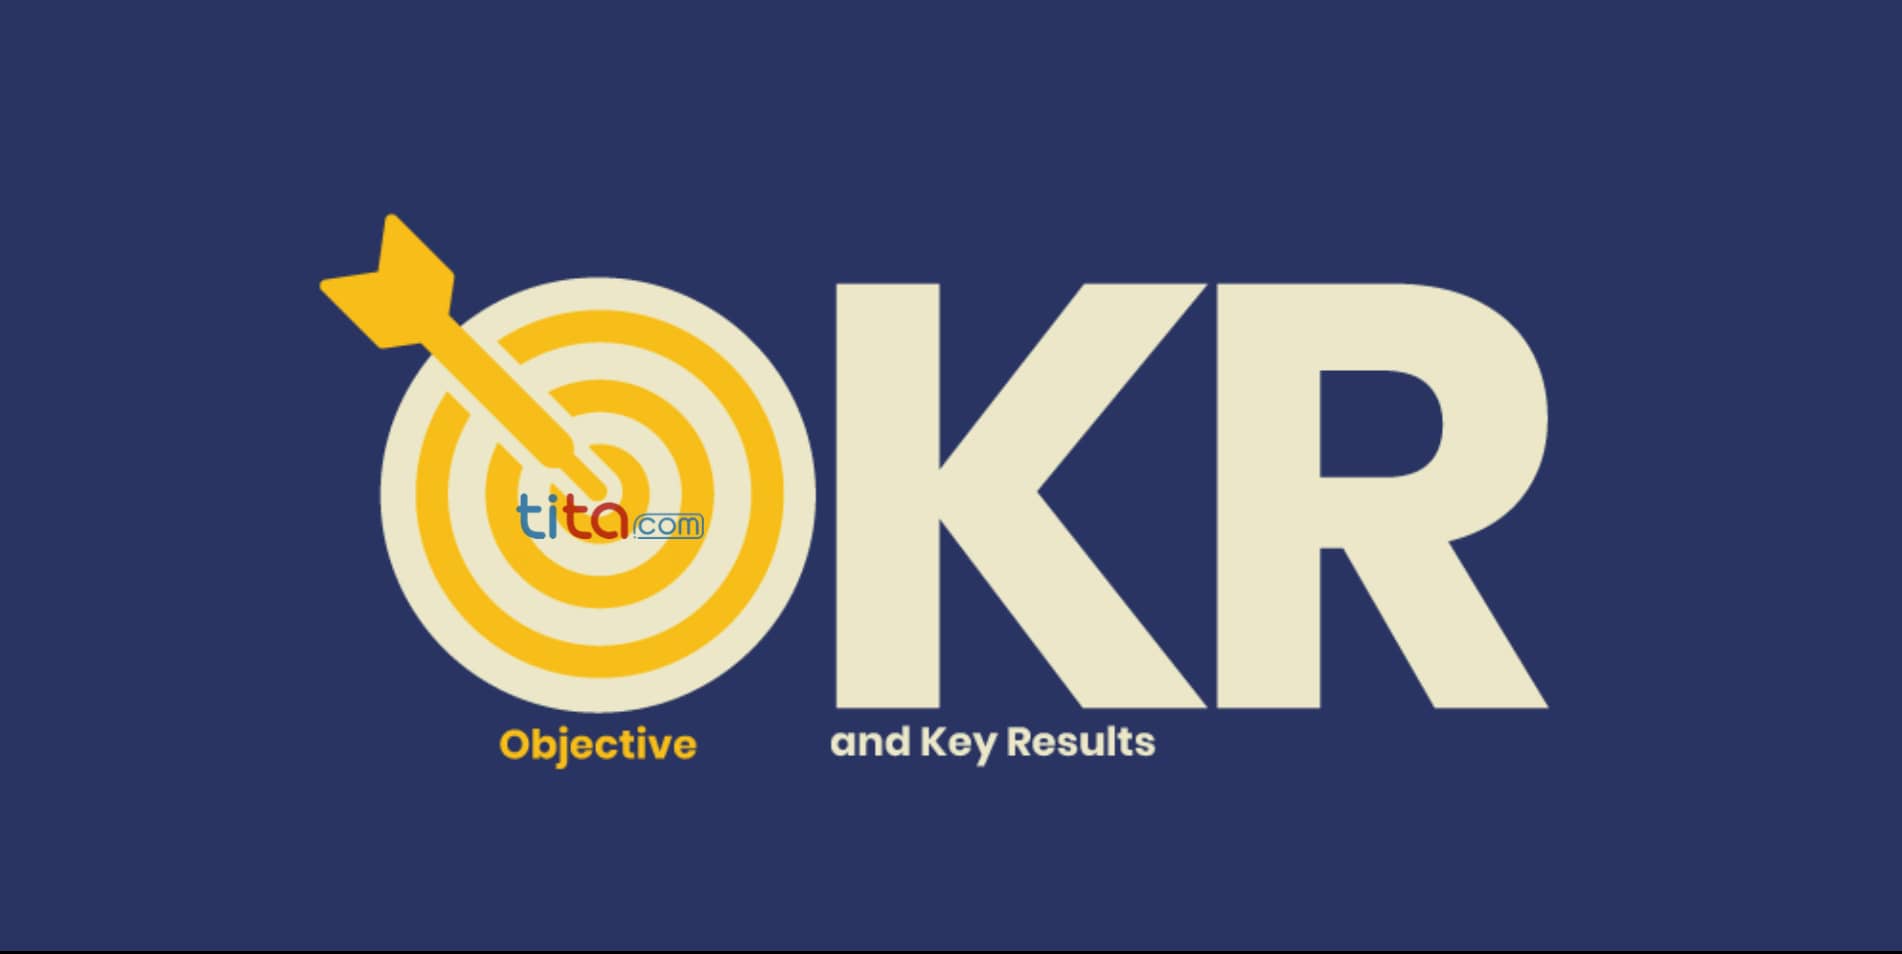 OKR分解/360对齐的方法详解-软件公司